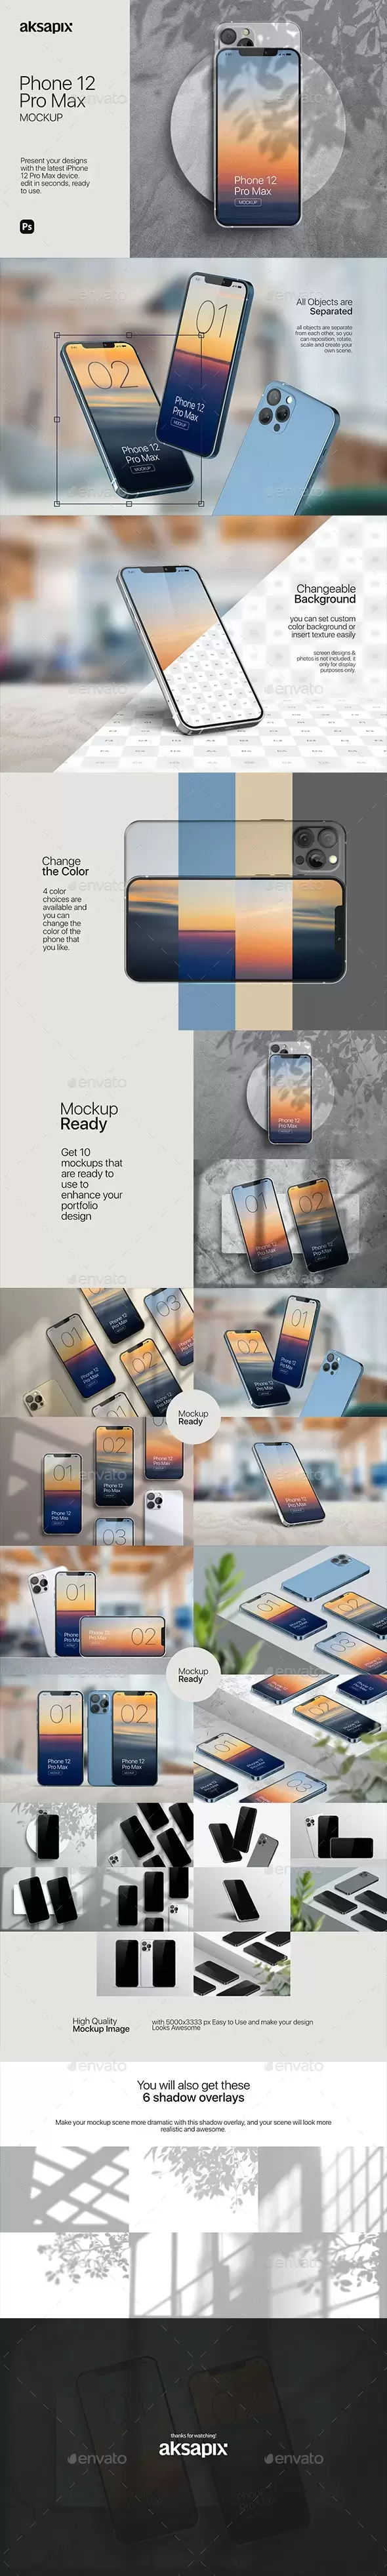 缩略图UI/UX设计展示iPhone 12手机样机模板下载